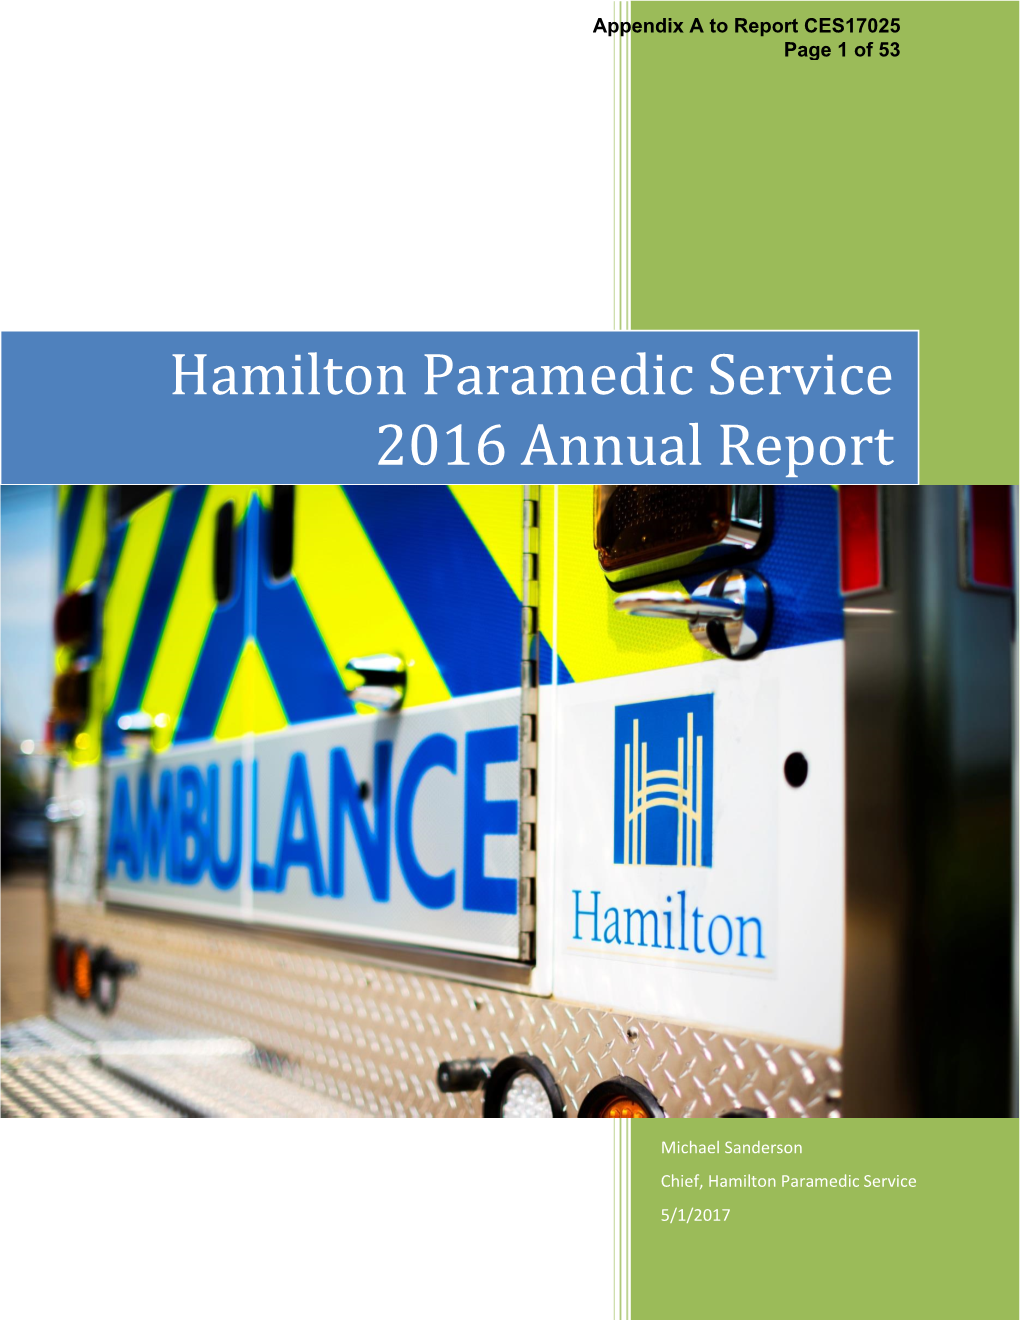 Hamilton Paramedic Service 2016 Annual Report